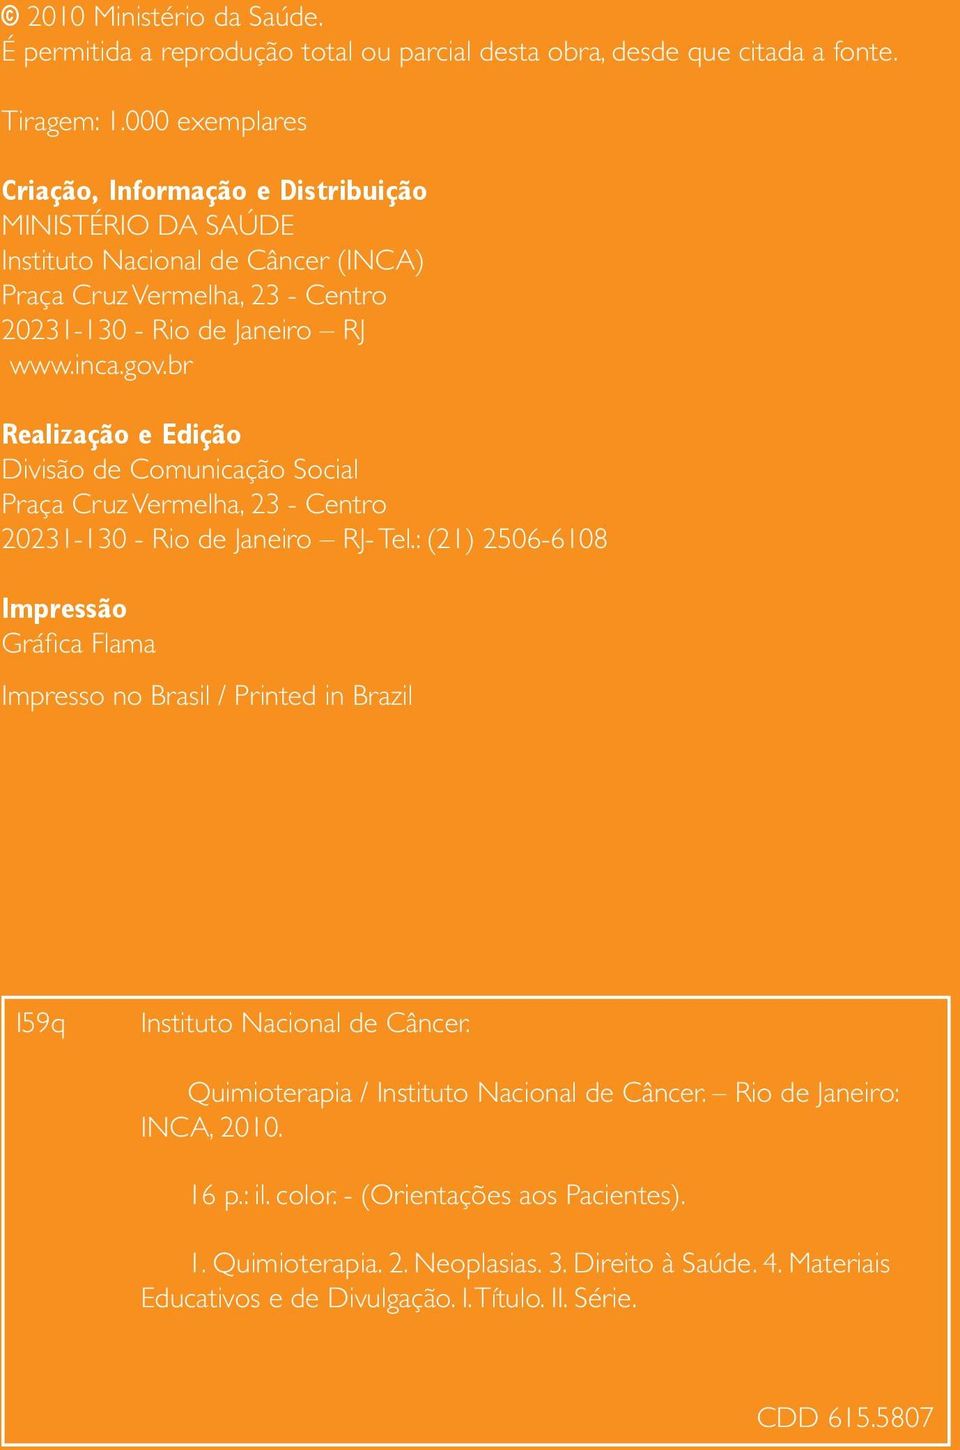 br Realização e Edição Divisão de Comunicação Social Praça Cruz Vermelha, 23 - Centro 20231-130 - Rio de Janeiro RJ- Tel.